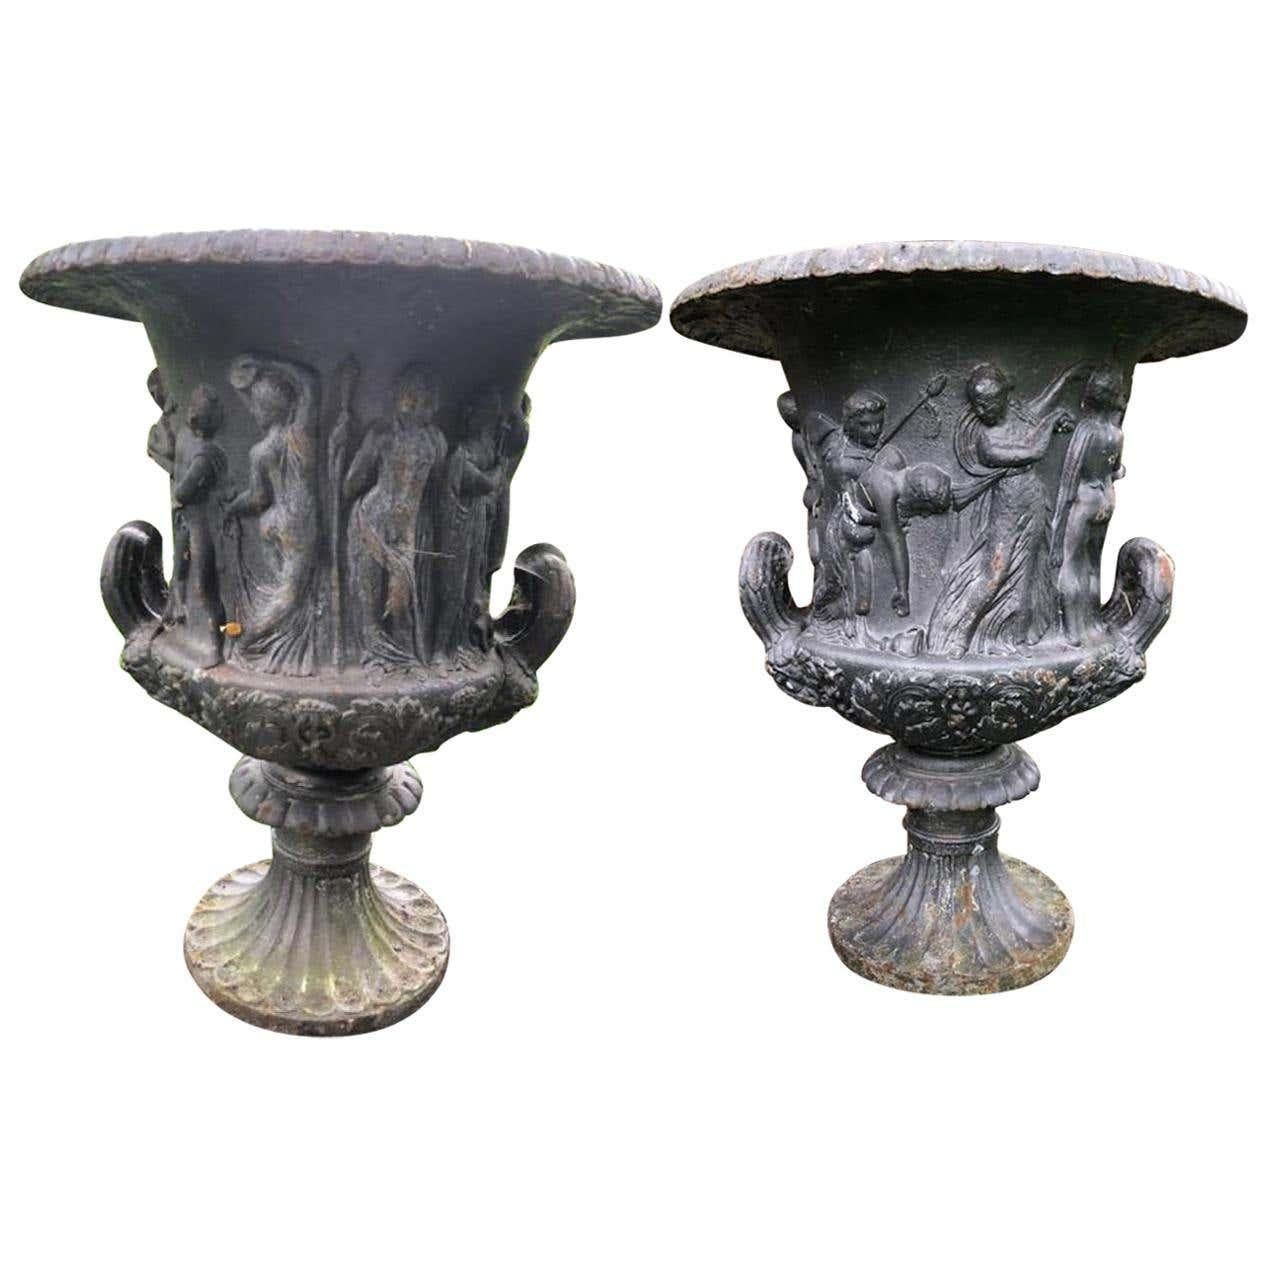 Ein Paar Urnen aus verwittertem Gusseisen aus dem 19. Jahrhundert nach dem Vorbild der Medici und Borghese. Klassischer, überhängender Eipfeil-Rand, darüber taillierter, reliefierter Korpus mit durchgehender Szene mythologischer Figuren, der untere